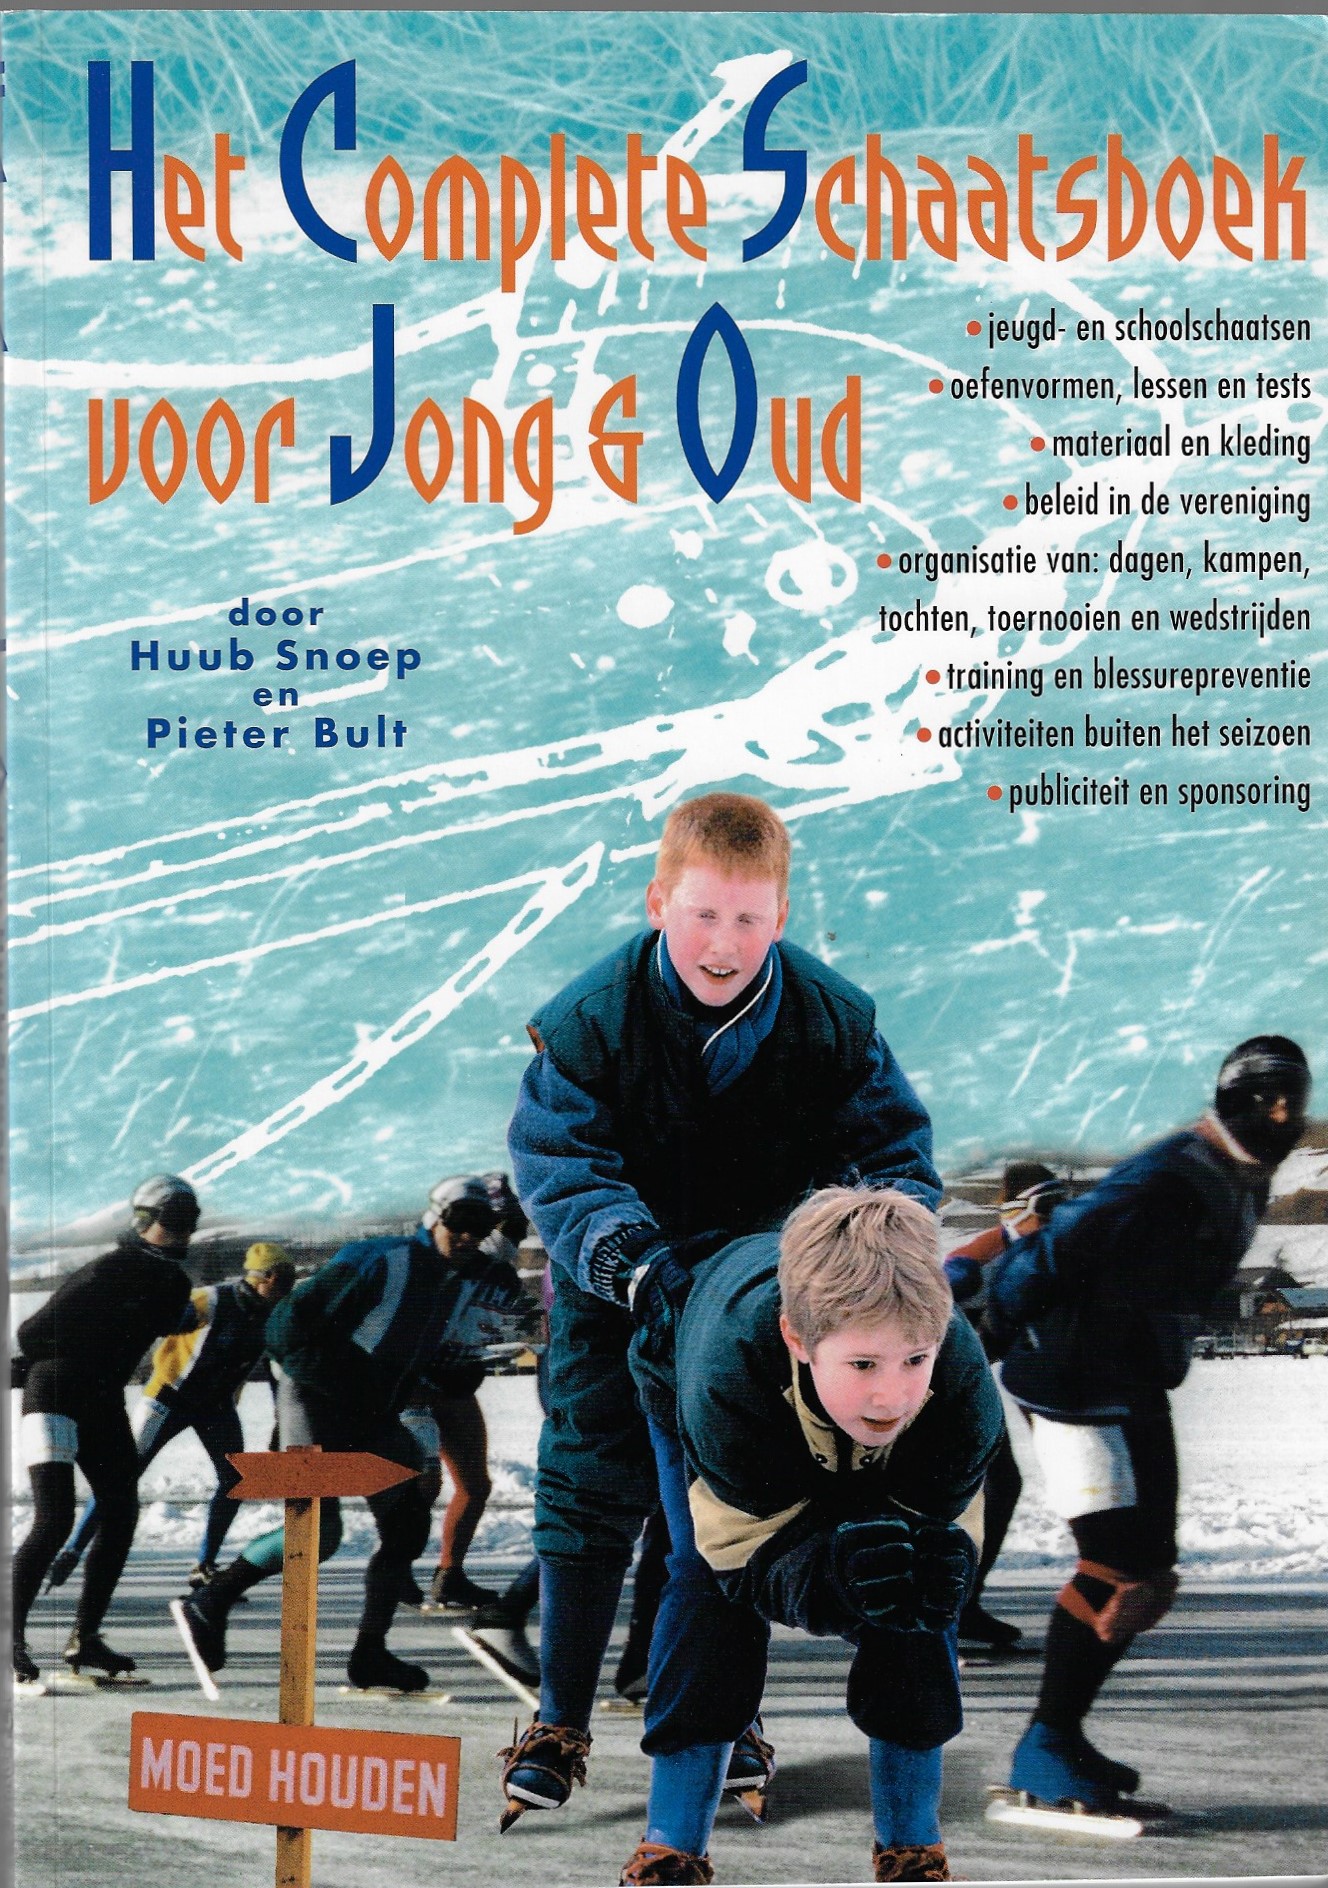 Snoep, Huub en Bult, Pieter - Het complete schaatsboek voor jong & oud